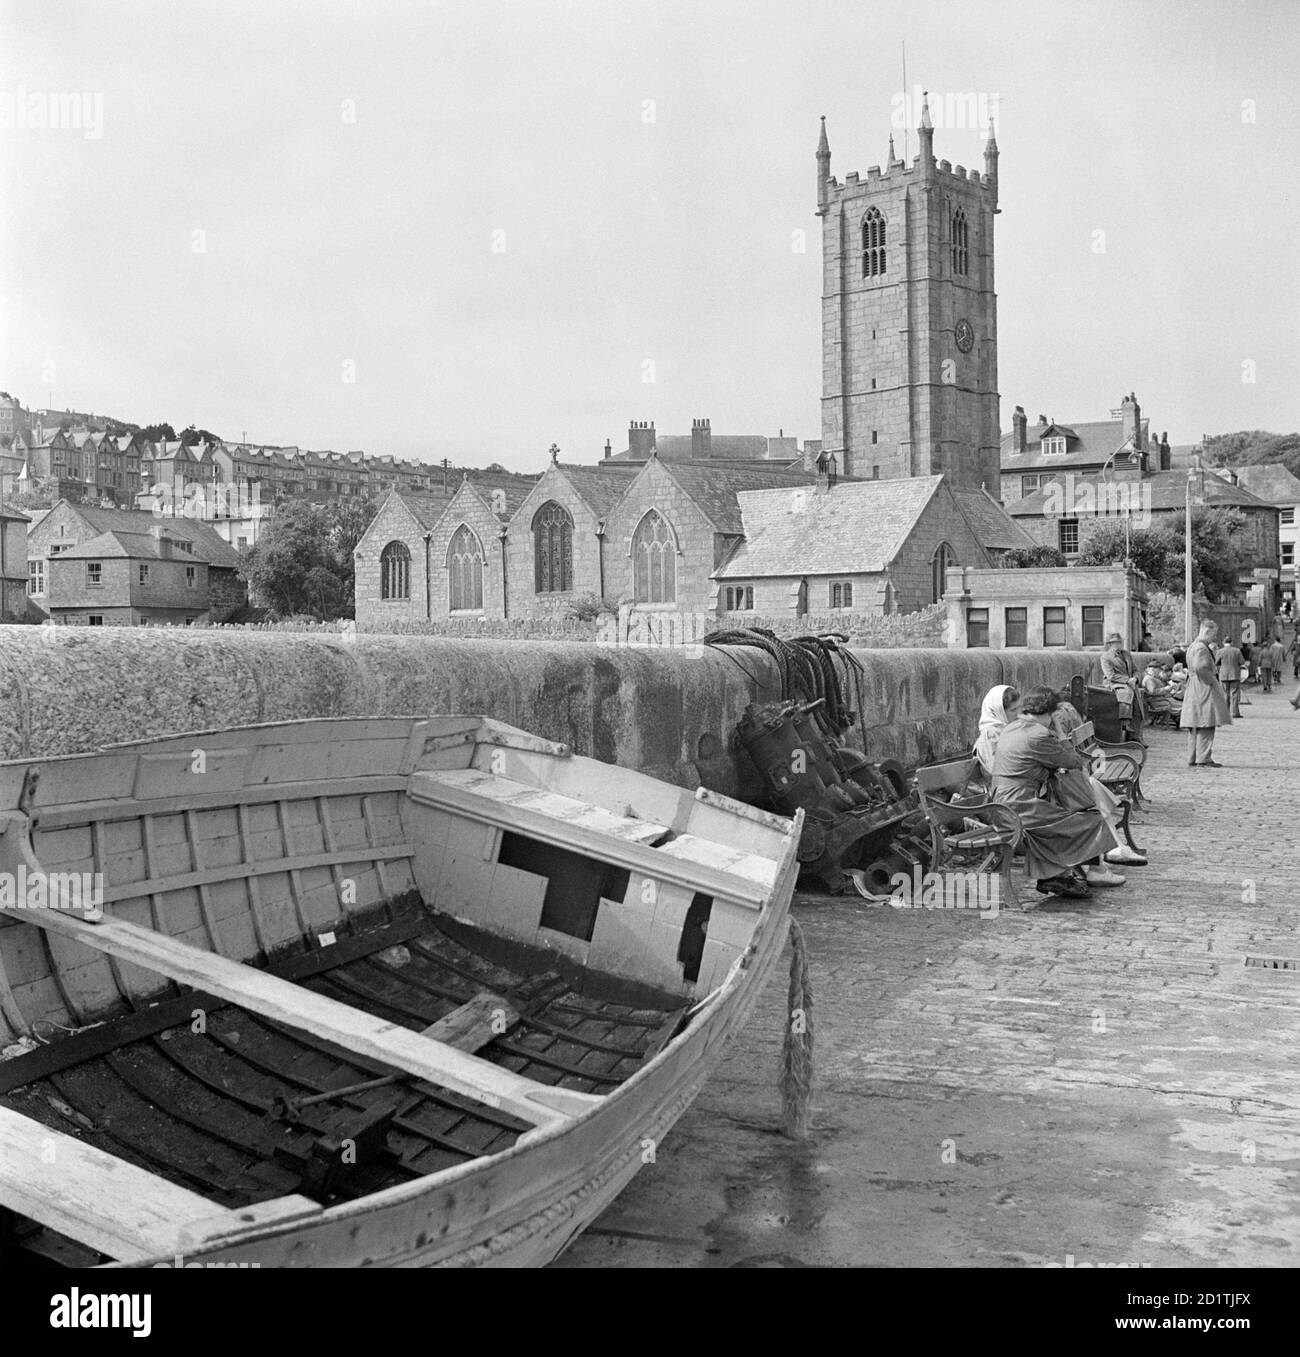 EGLISE ST IA, St Ives, Cornouailles. L'extrémité est de l'église St Ives, datant du début du XVe siècle, vue depuis le port. Un bateau est tiré au premier plan. Photographié par Eric de Mare entre 1945 et 1980. Banque D'Images